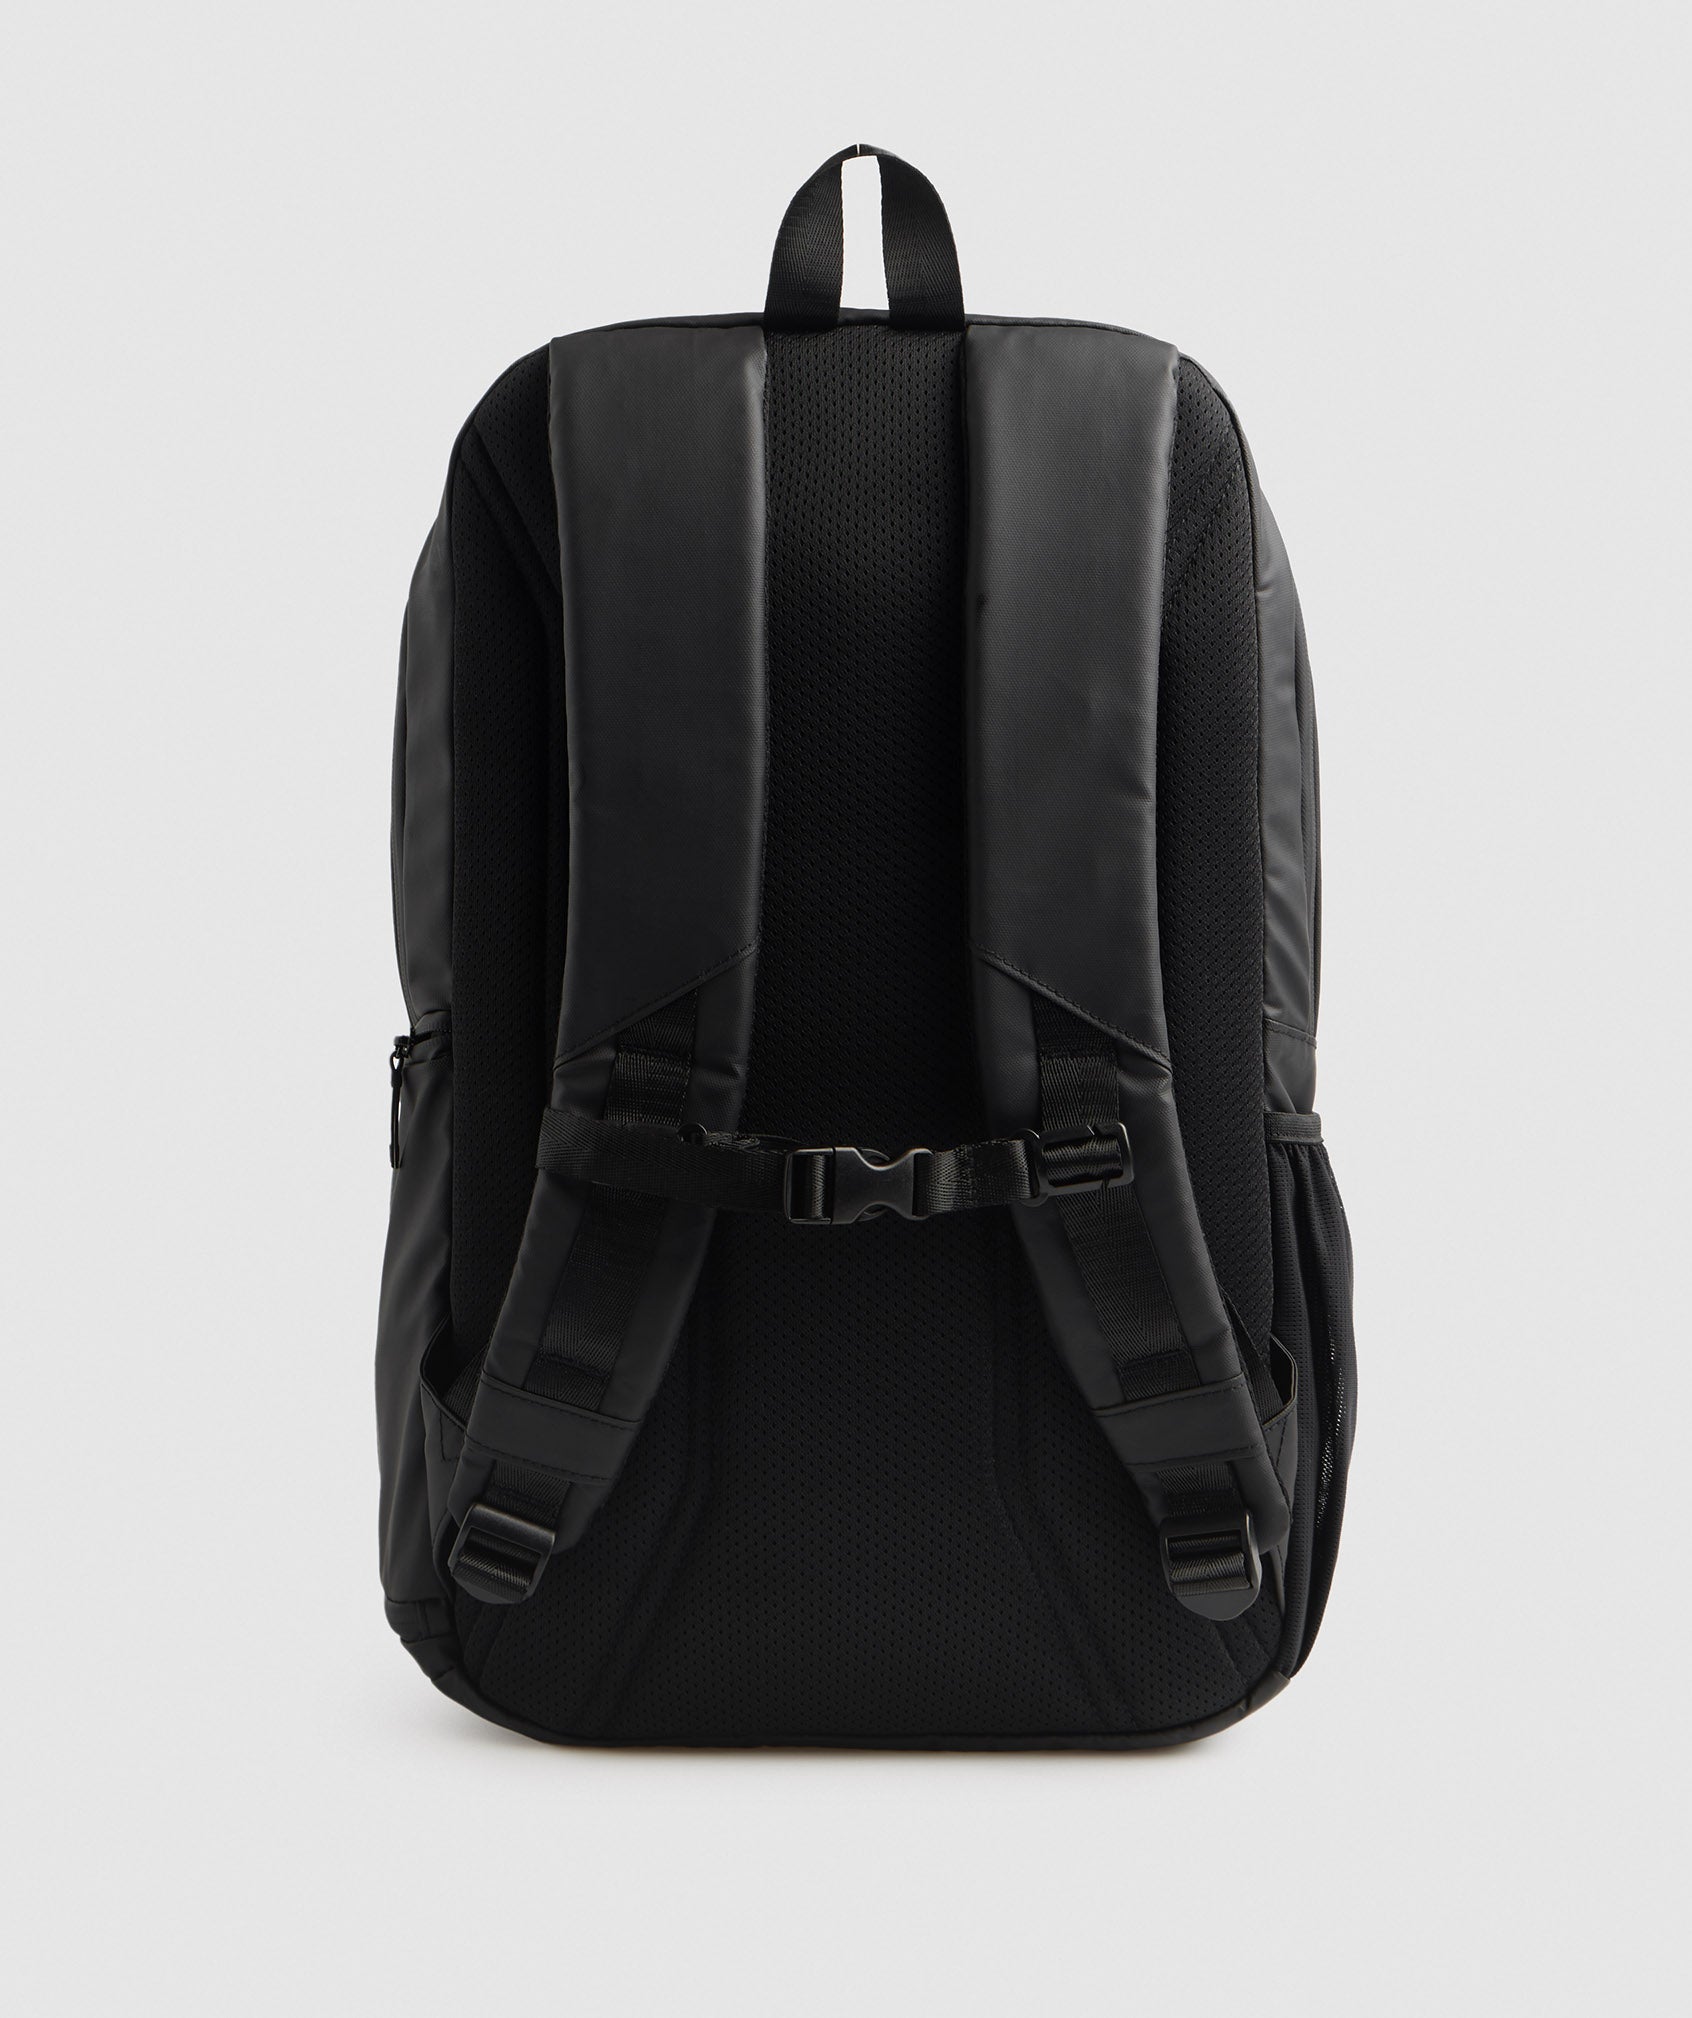 X-Series Bag 0.1 in Black